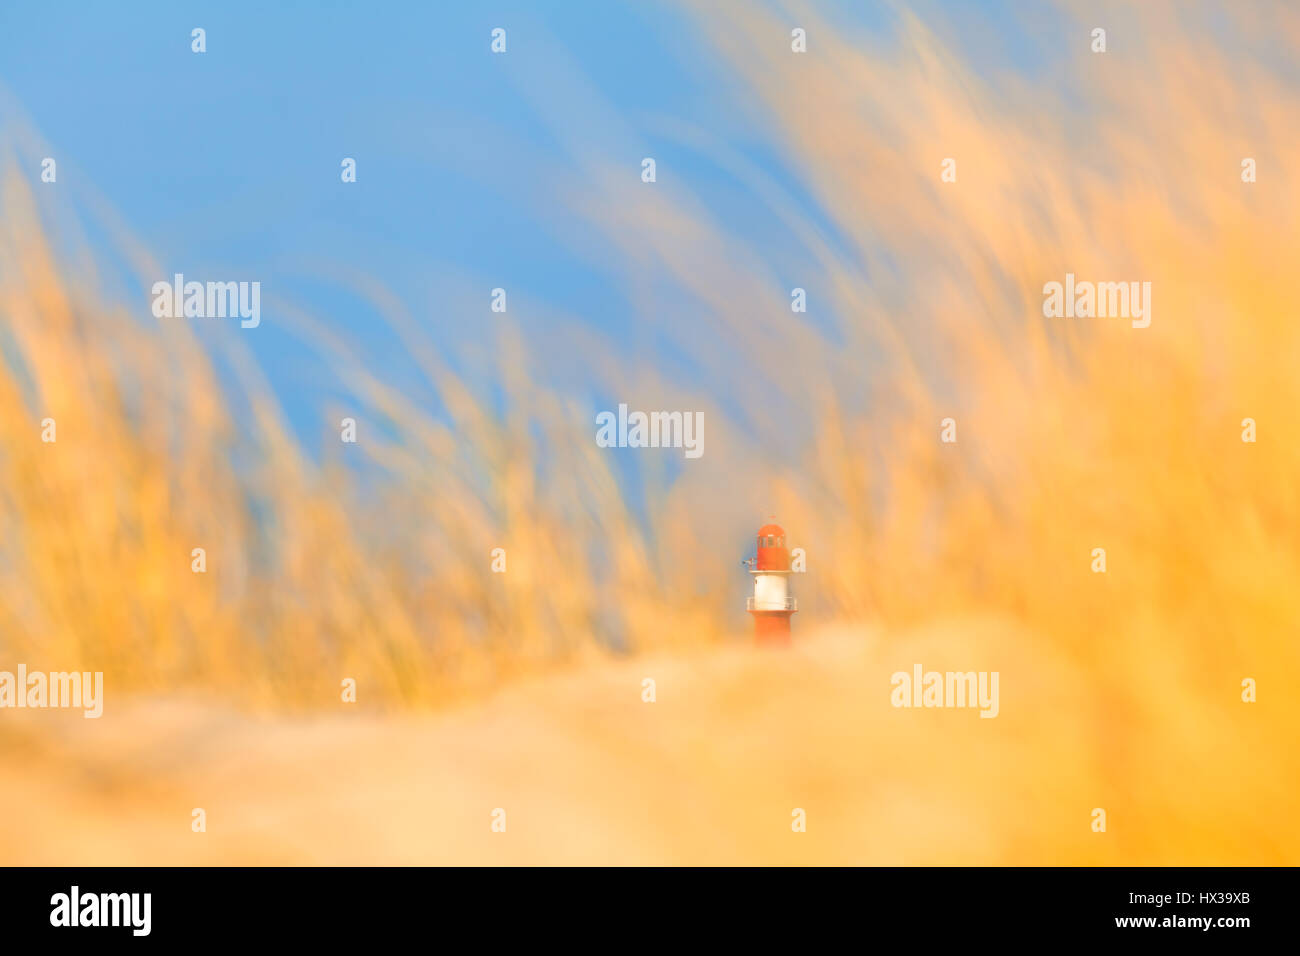 Kleine rot-weiß gestreifte Leuchtturm in der Entfernung verschwommen mit gelbem Sand und Dünengras, blauer Himmel (textfreiraum) umgeben Stockfoto